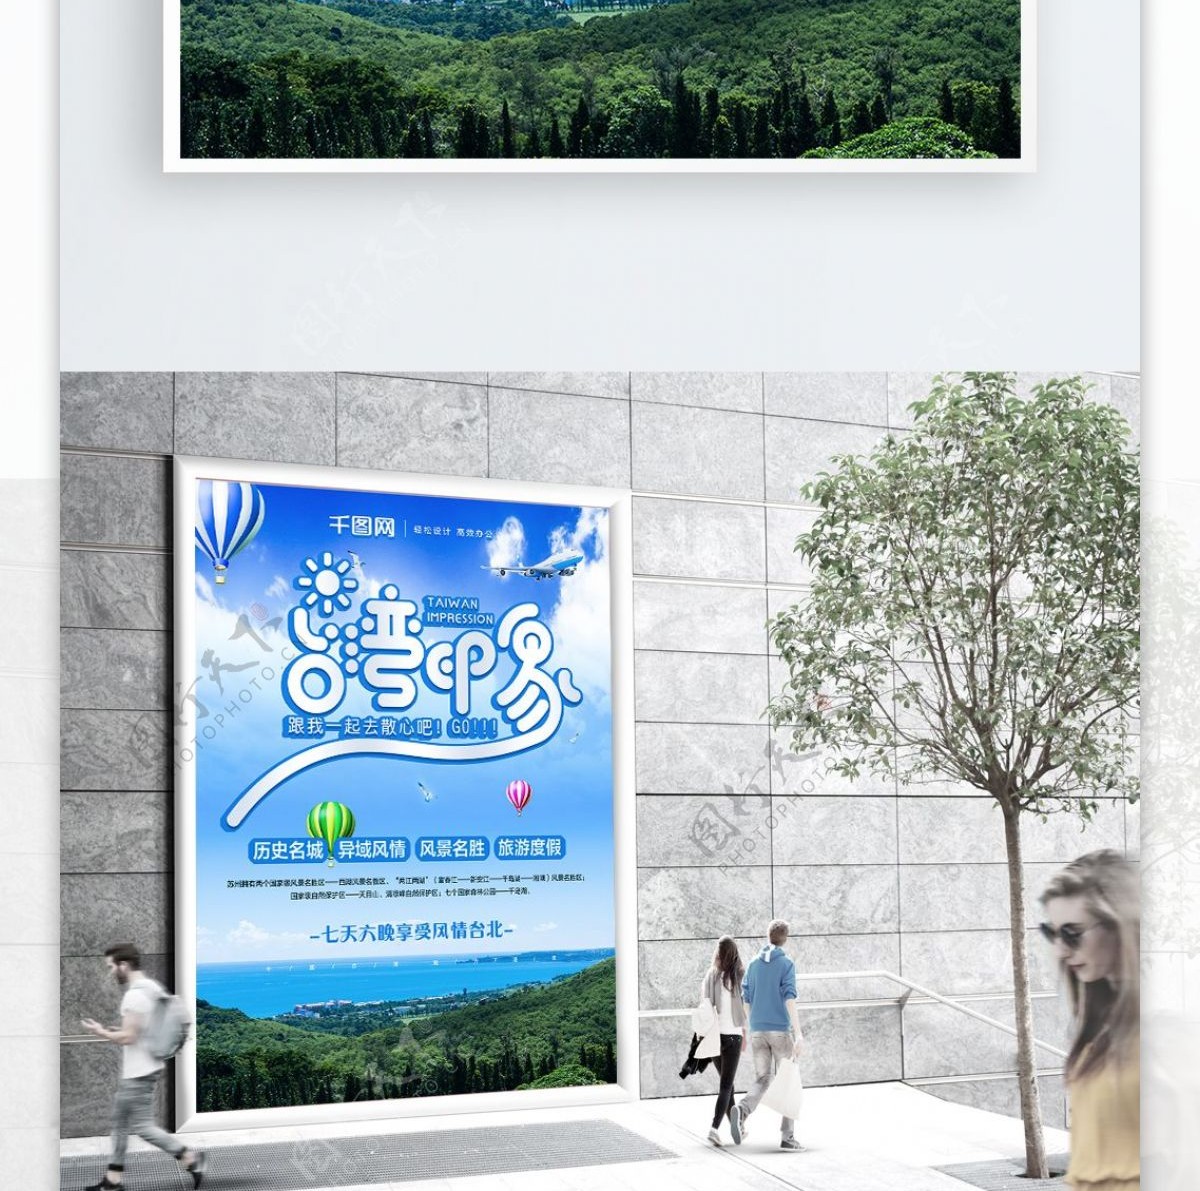 原创创意字体设计清新简约台湾旅游宣传海报